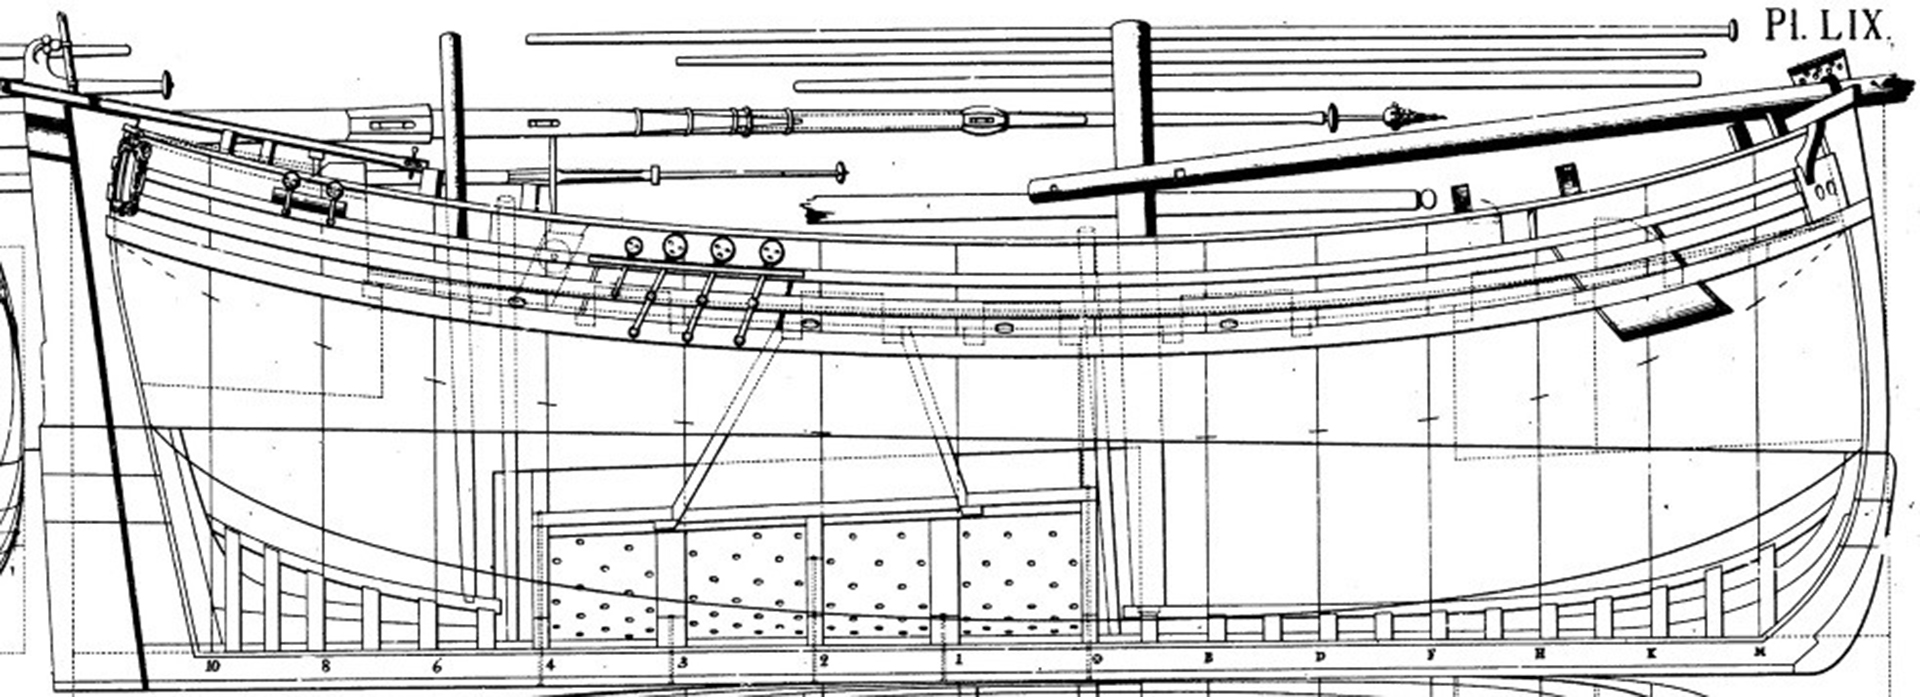 Technische Zeichnung zum Schiff